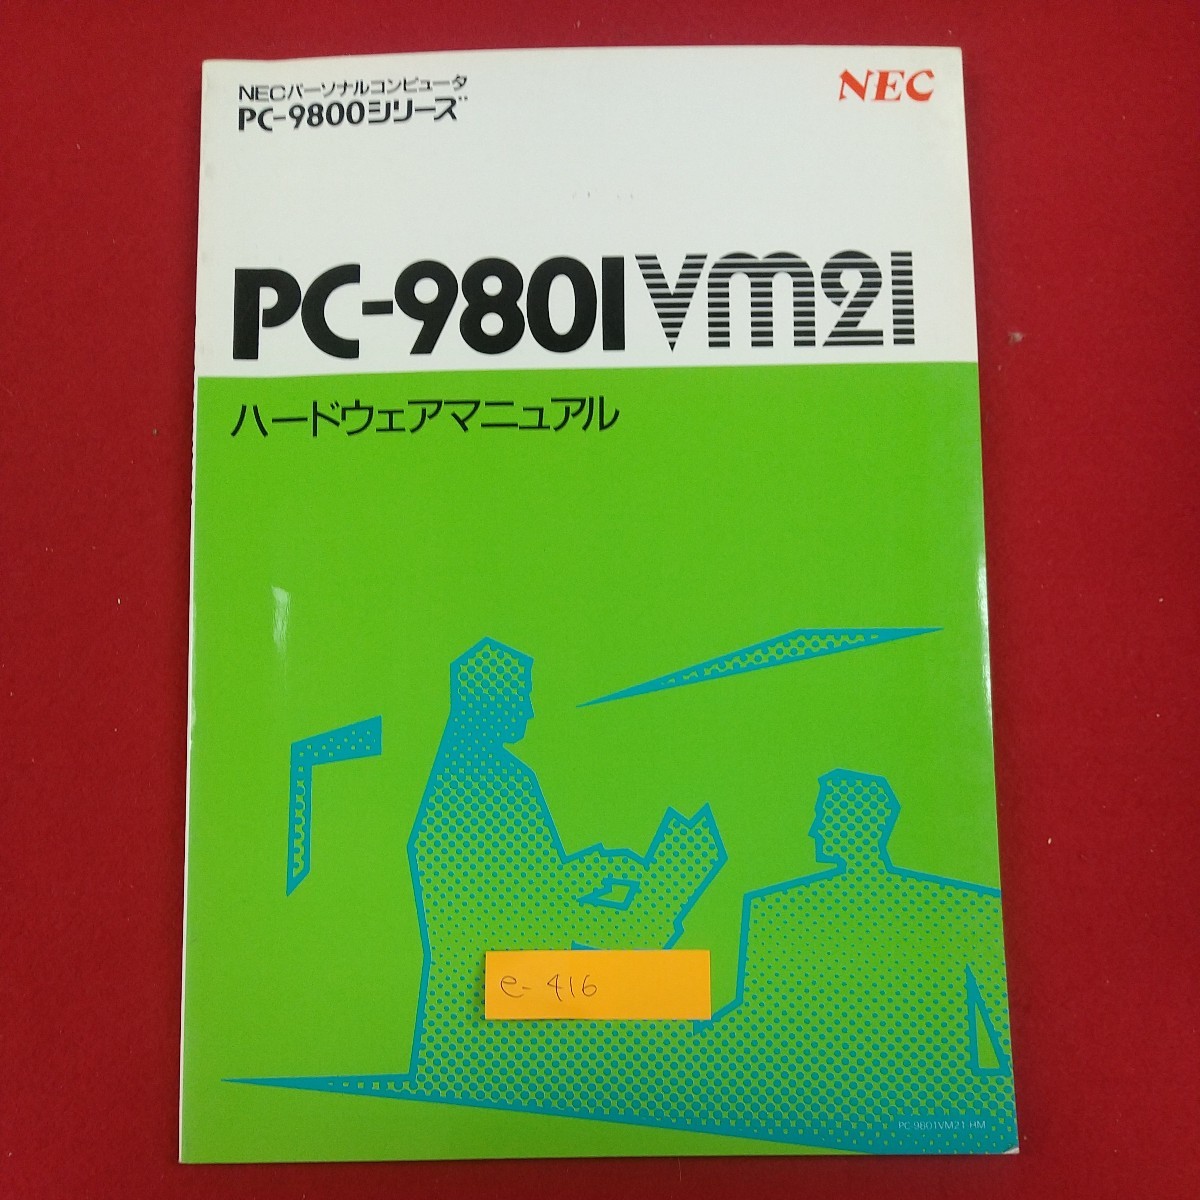 e-416※2 NECパーソナルコンピュータ PC-980IVM2I ハードウェアマニュアル PC-9800シリーズ システム概要 ハードウェア オプション 他_画像1